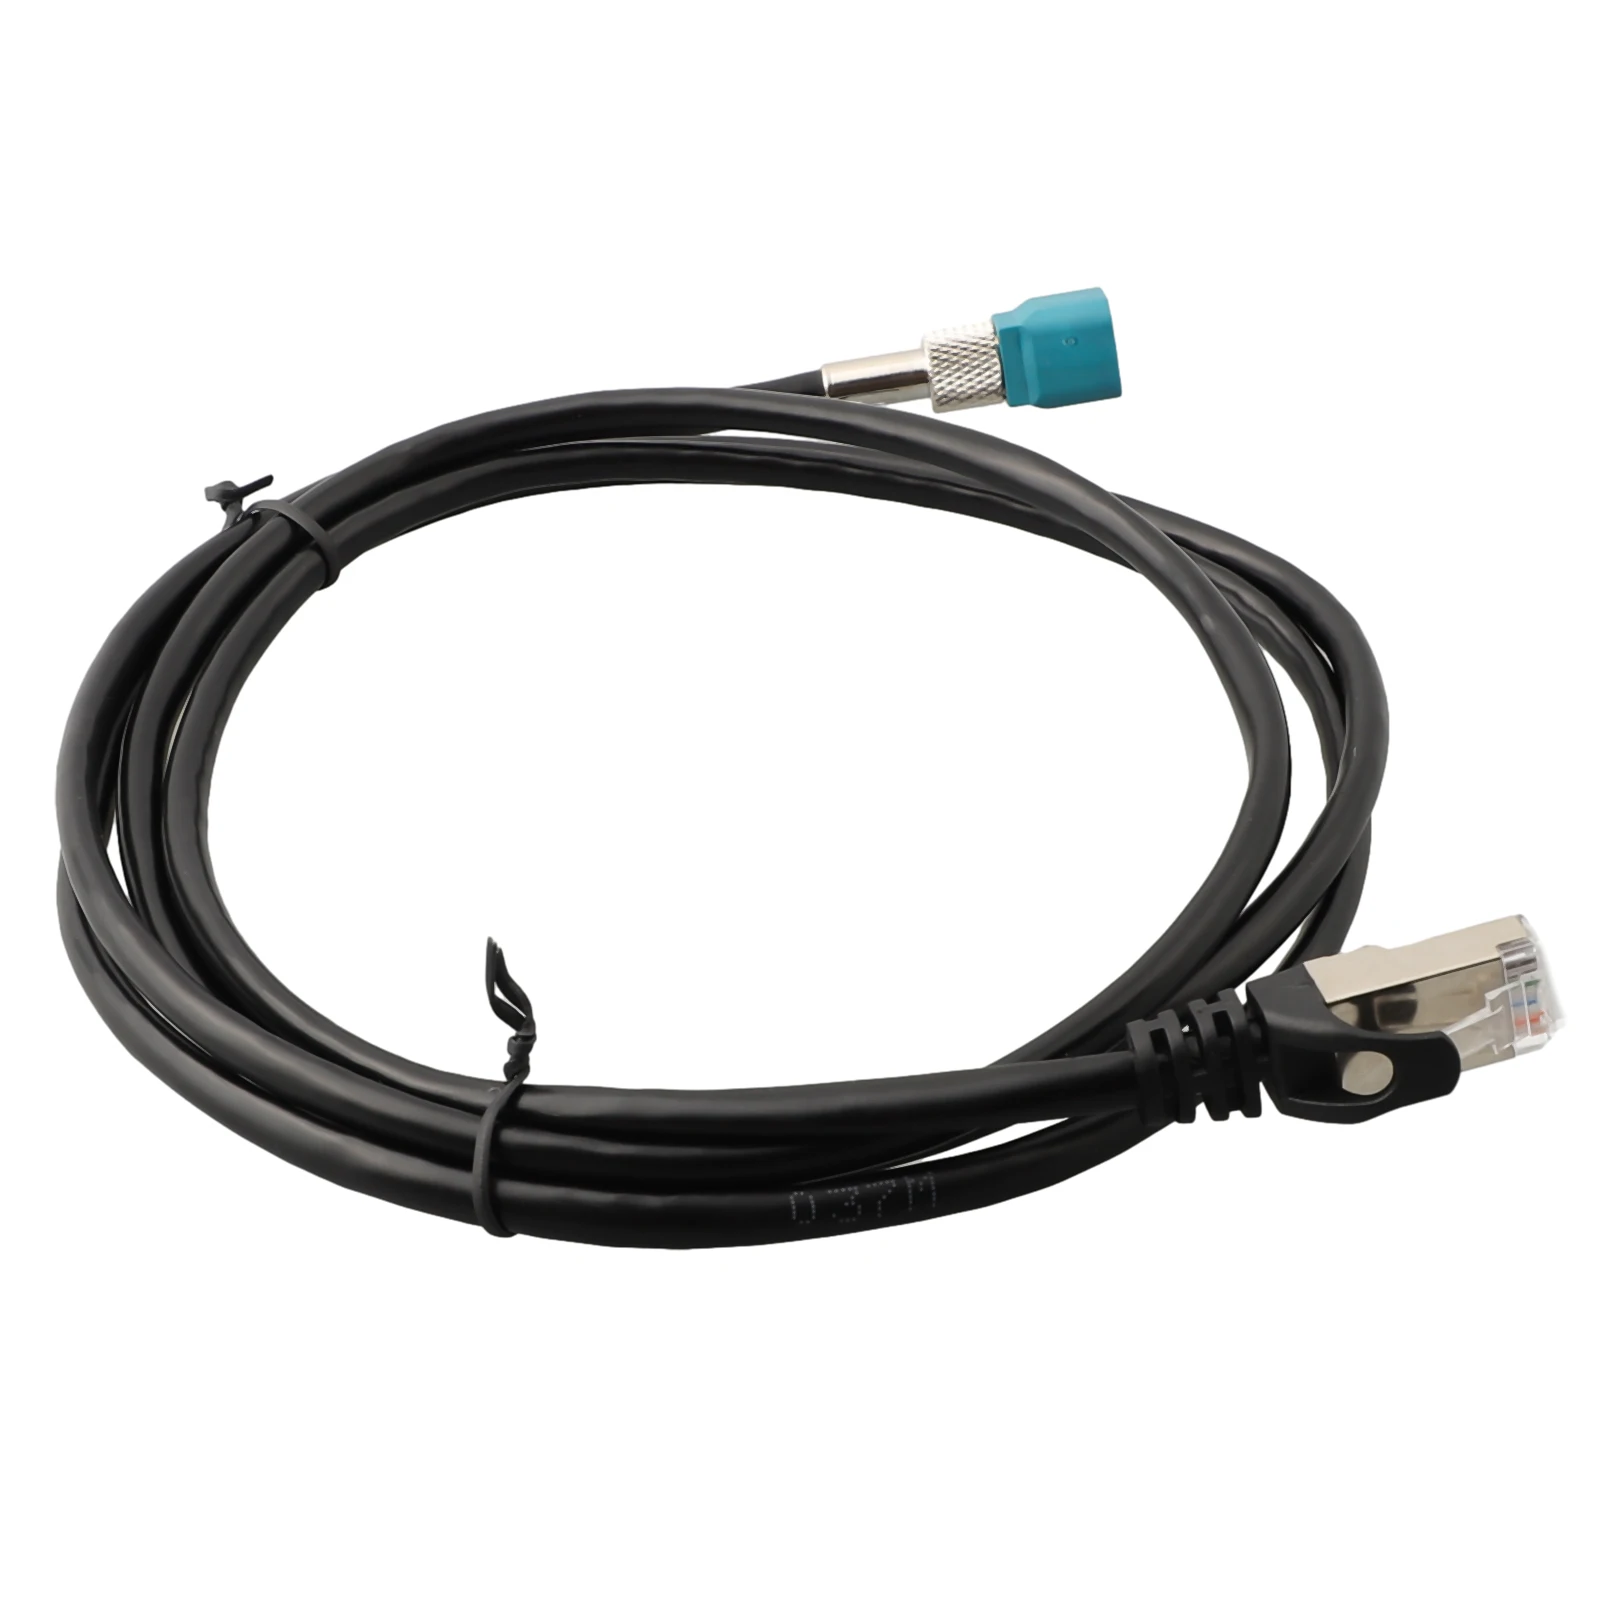 

Практичный кабель 1013230-00-A 12-16, черный, простой в установке для Tesla Model S/X, пластиковый сервисный кабель «подключи и работай»